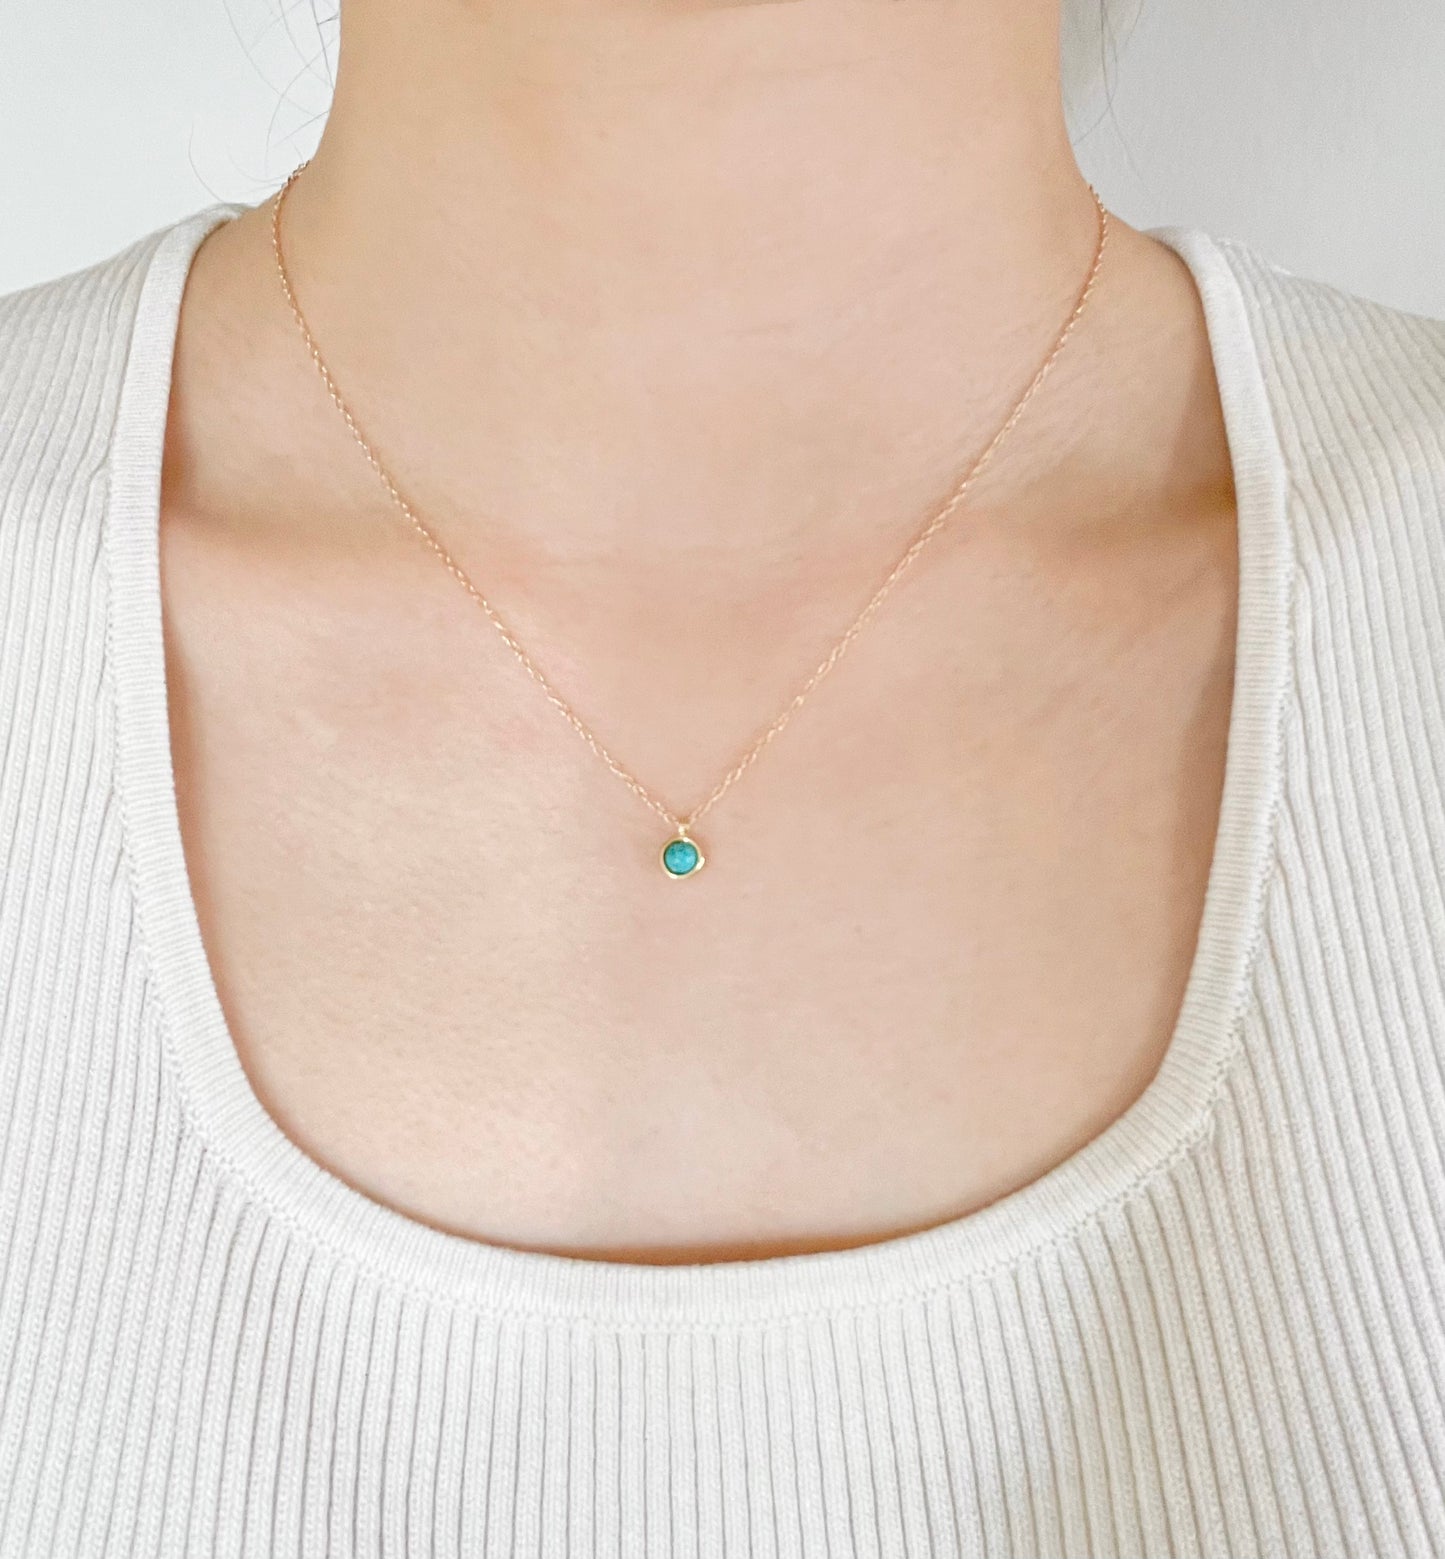 Turquoise Quartz Necklace